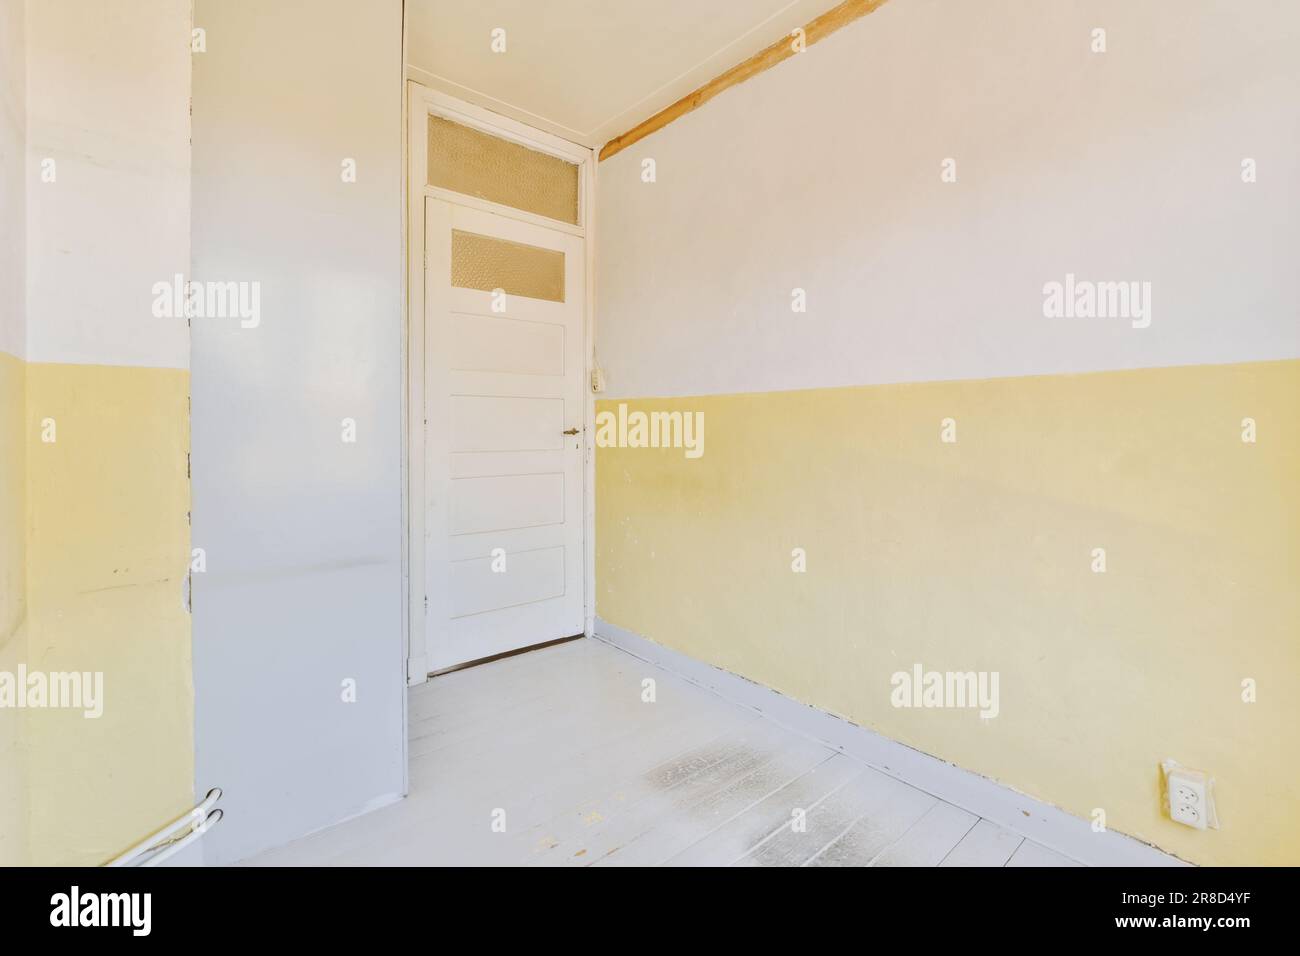 Ein leerer Raum mit gelber Farbe an den Wänden und einer weißen Tür auf der linken Seite wird nicht benutzt, aber Stockfoto